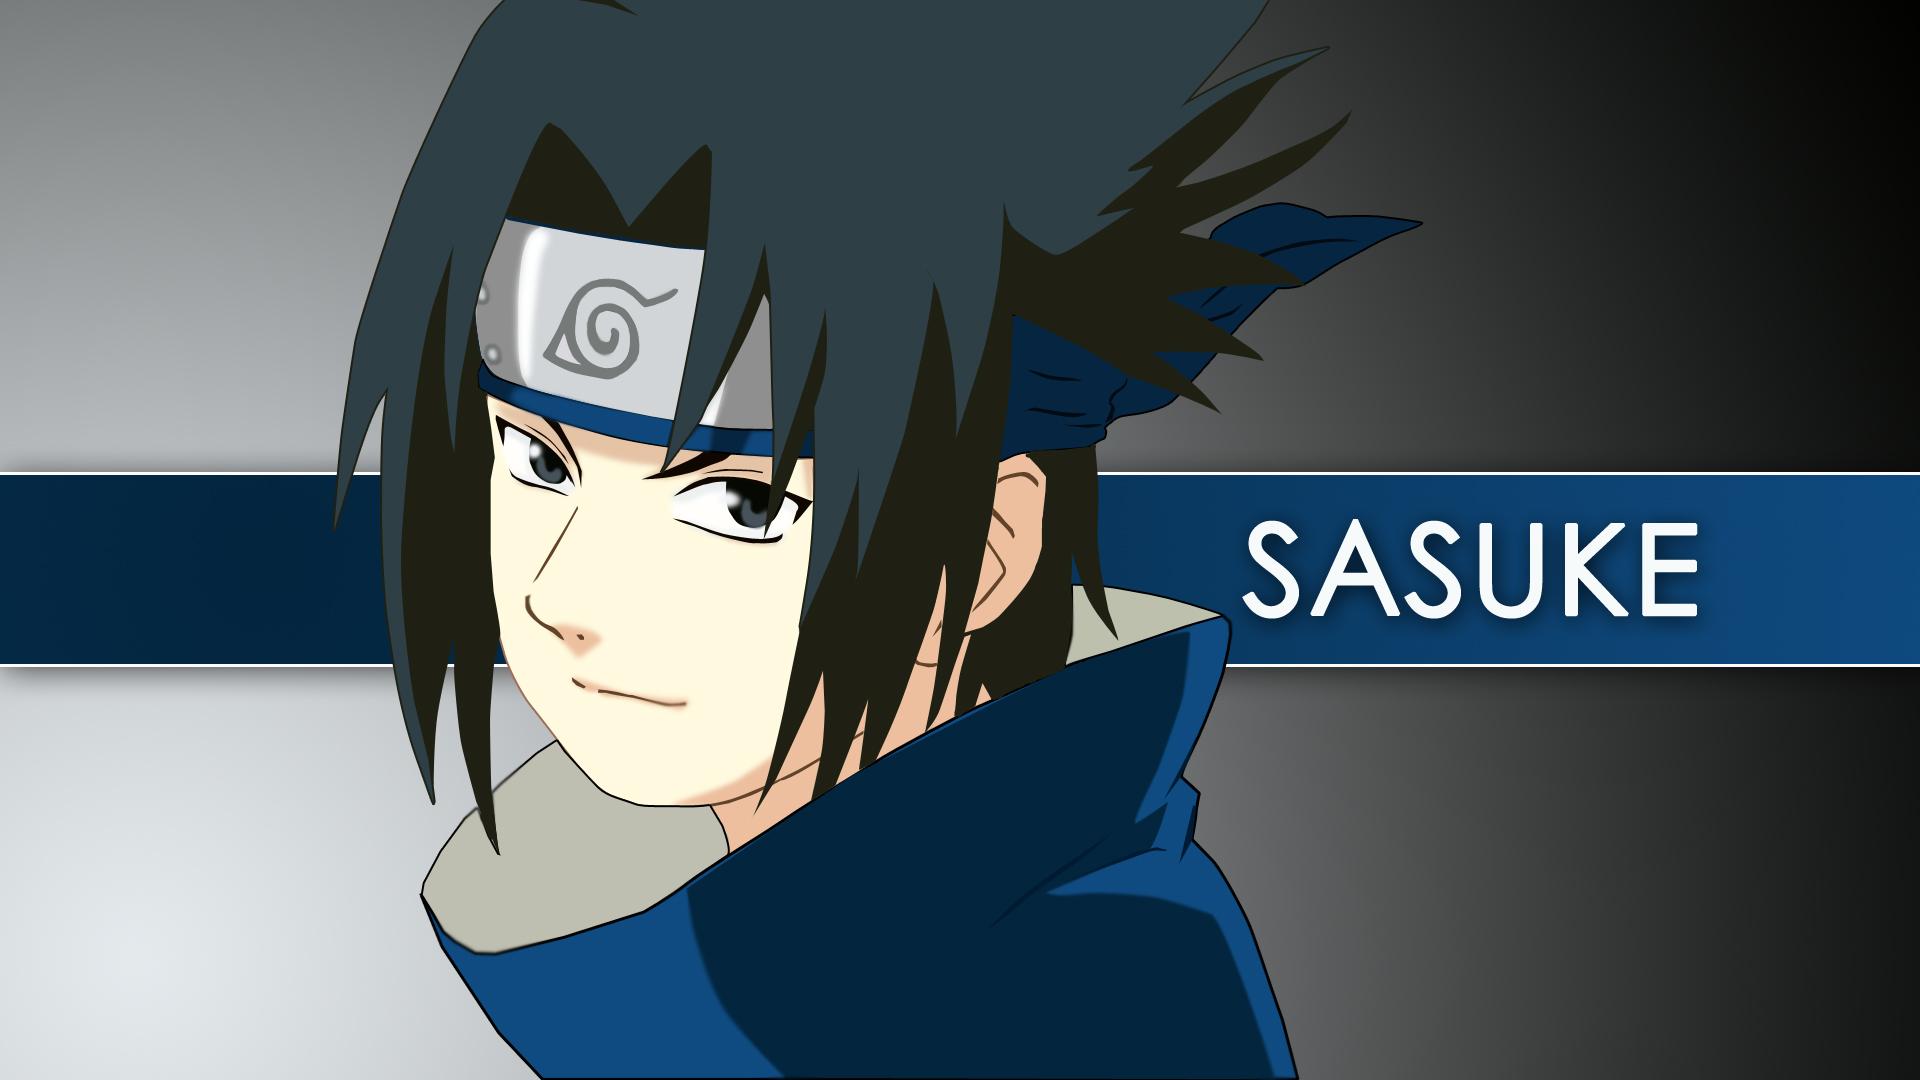 Lil sasuke  Sasuke, Uchiha, Sasuke uchiha